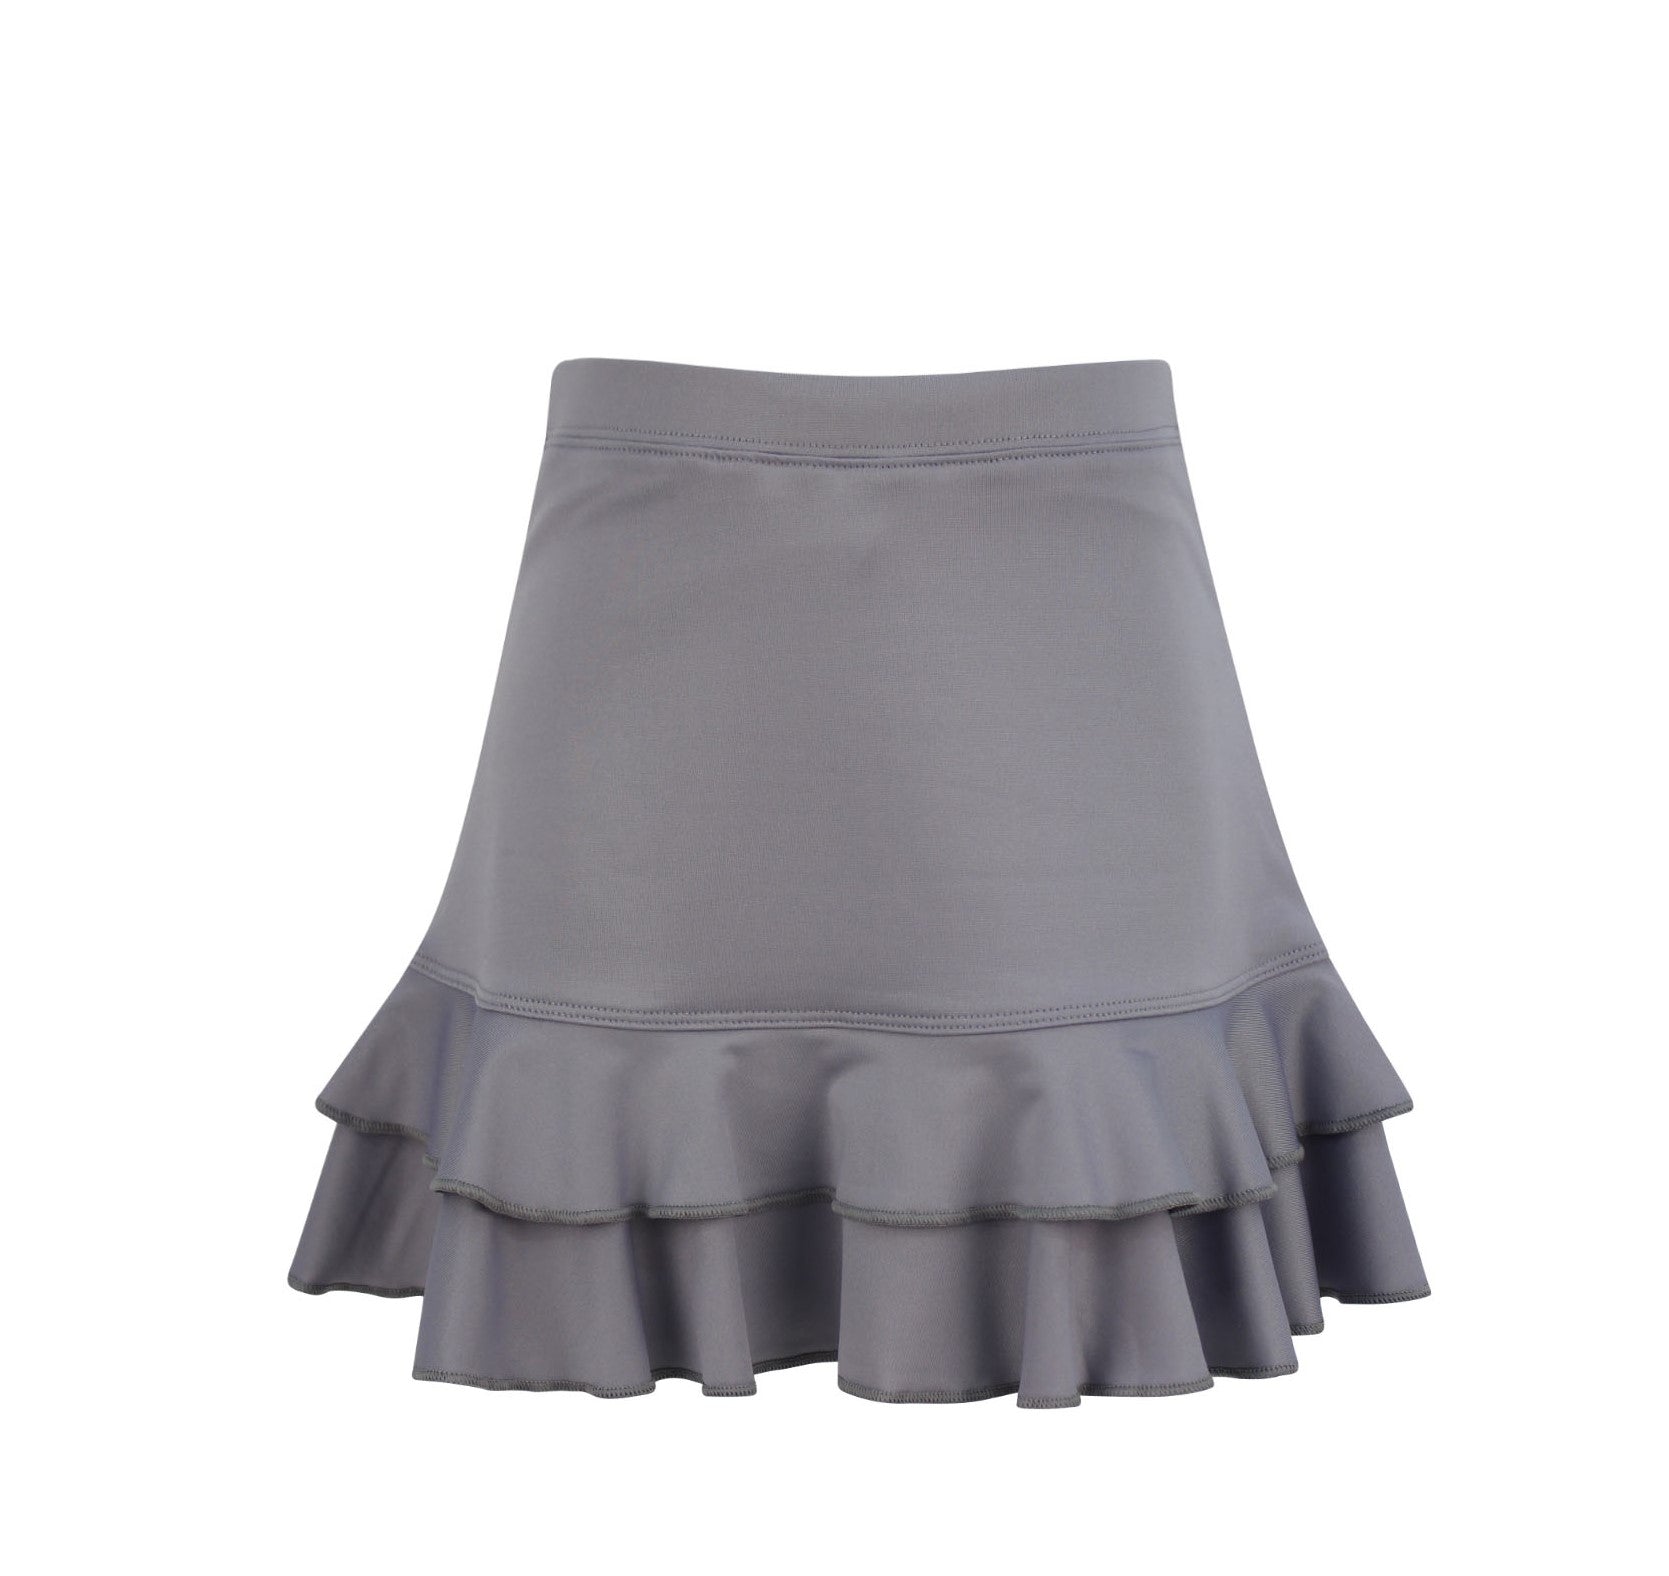 #Cotton Candy Ruffle Gray Skirt - Little Miss Tennis